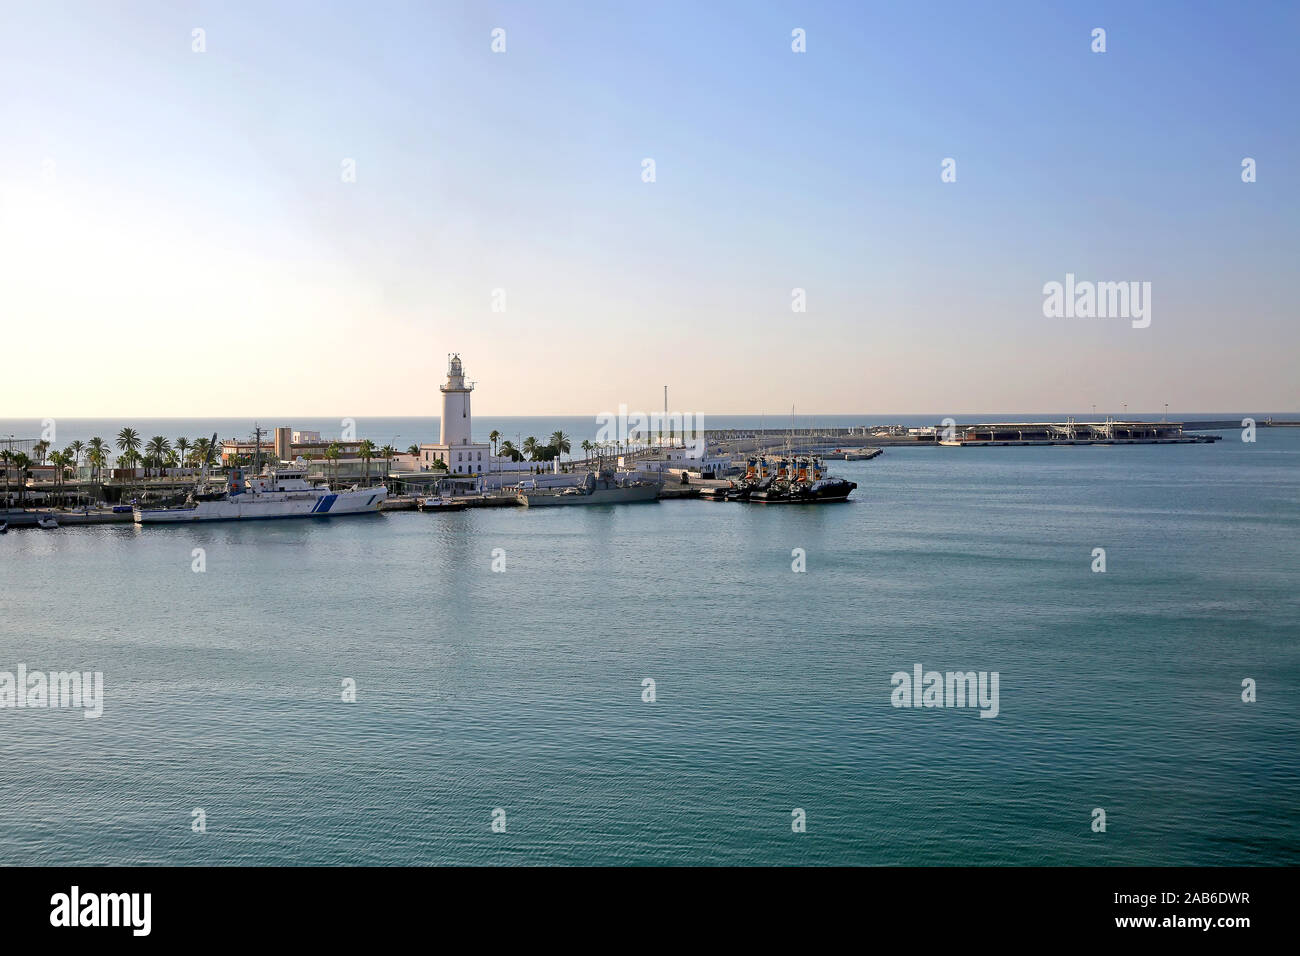 Le Port de Malaga, avec quelques petits navires à quai et le phare sur la jetée, l'Andalousie, Sud de l'Espagne. Banque D'Images